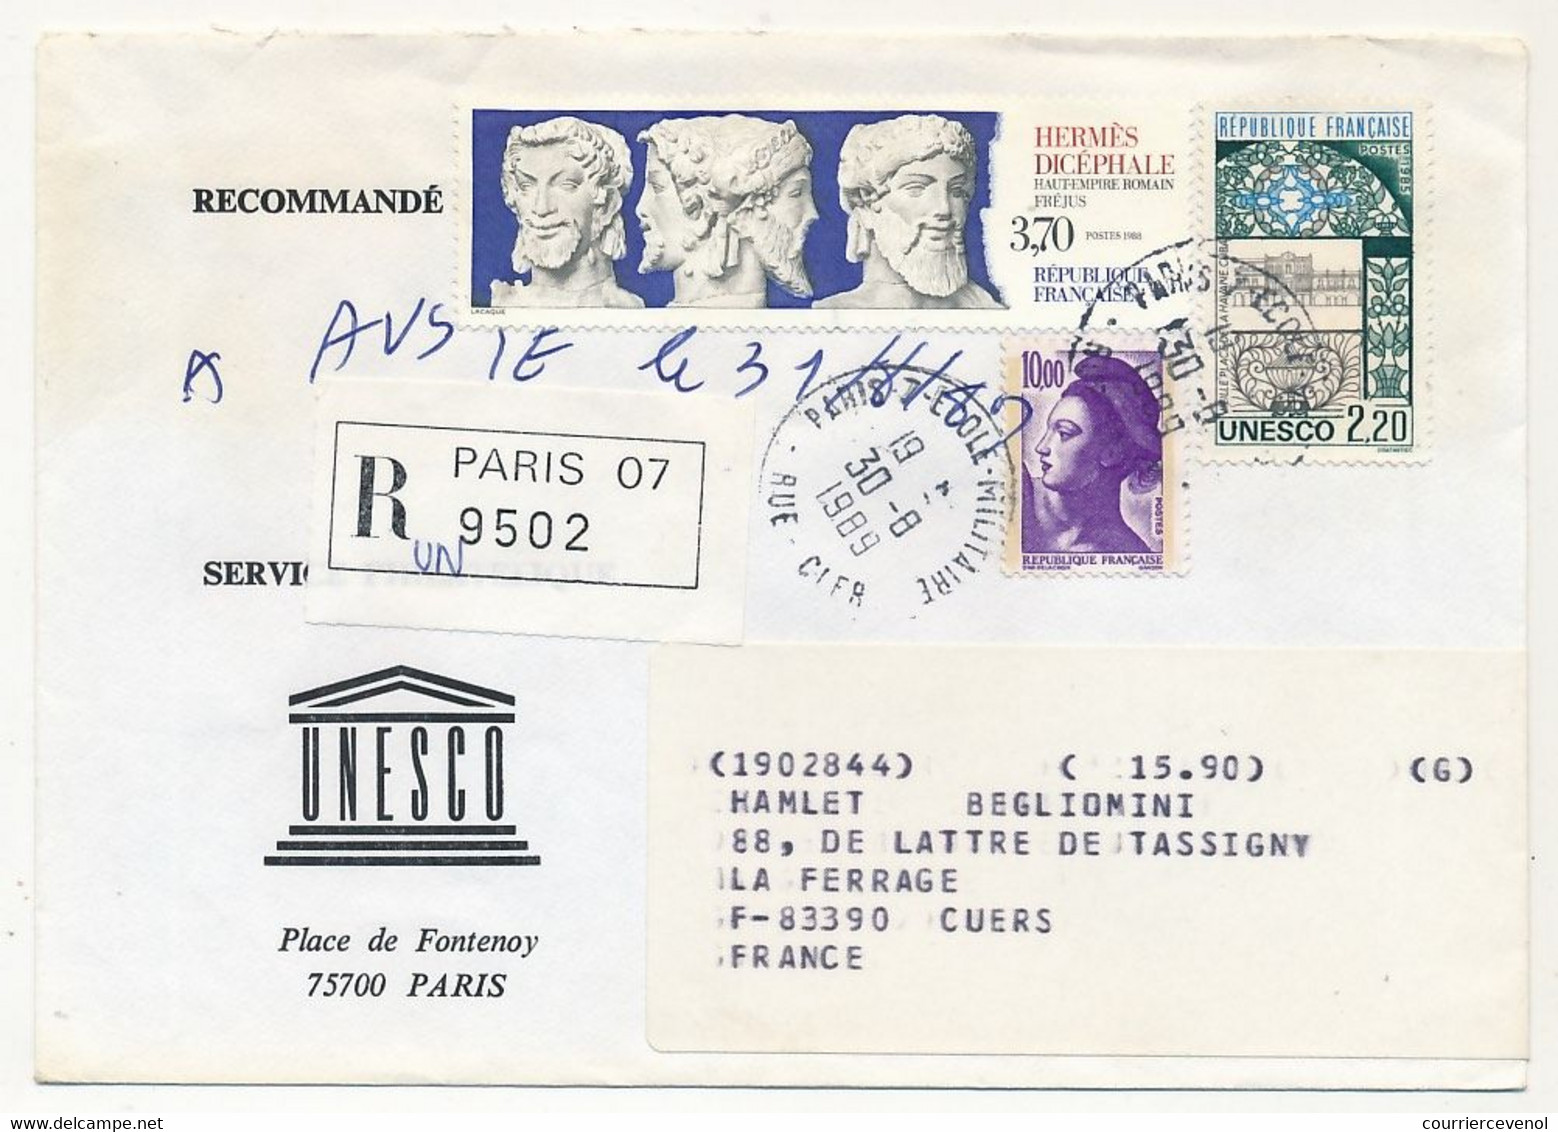 FRANCE - UNESCO - 8 Enveloppes Service Philatélique Unesco Avec Timbres De Service - Obl Paris 7 Rue Clerc - 1989/90 - Brieven & Documenten